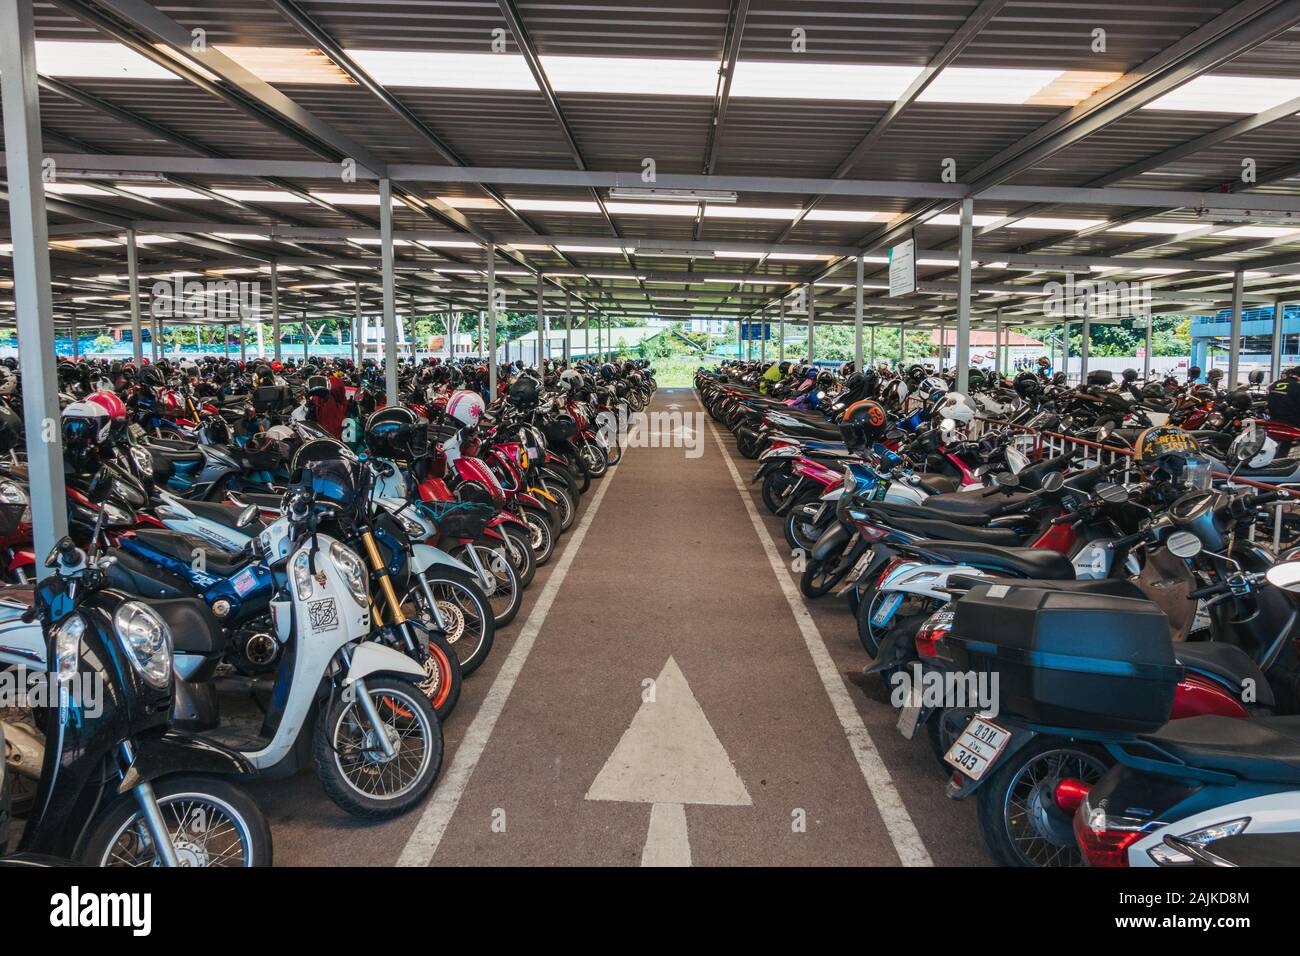 Des centaines de motos et scooters moto garée dans le parking à CentralFestival Shopping Mall, Chiang Mai, Thaïlande Banque D'Images